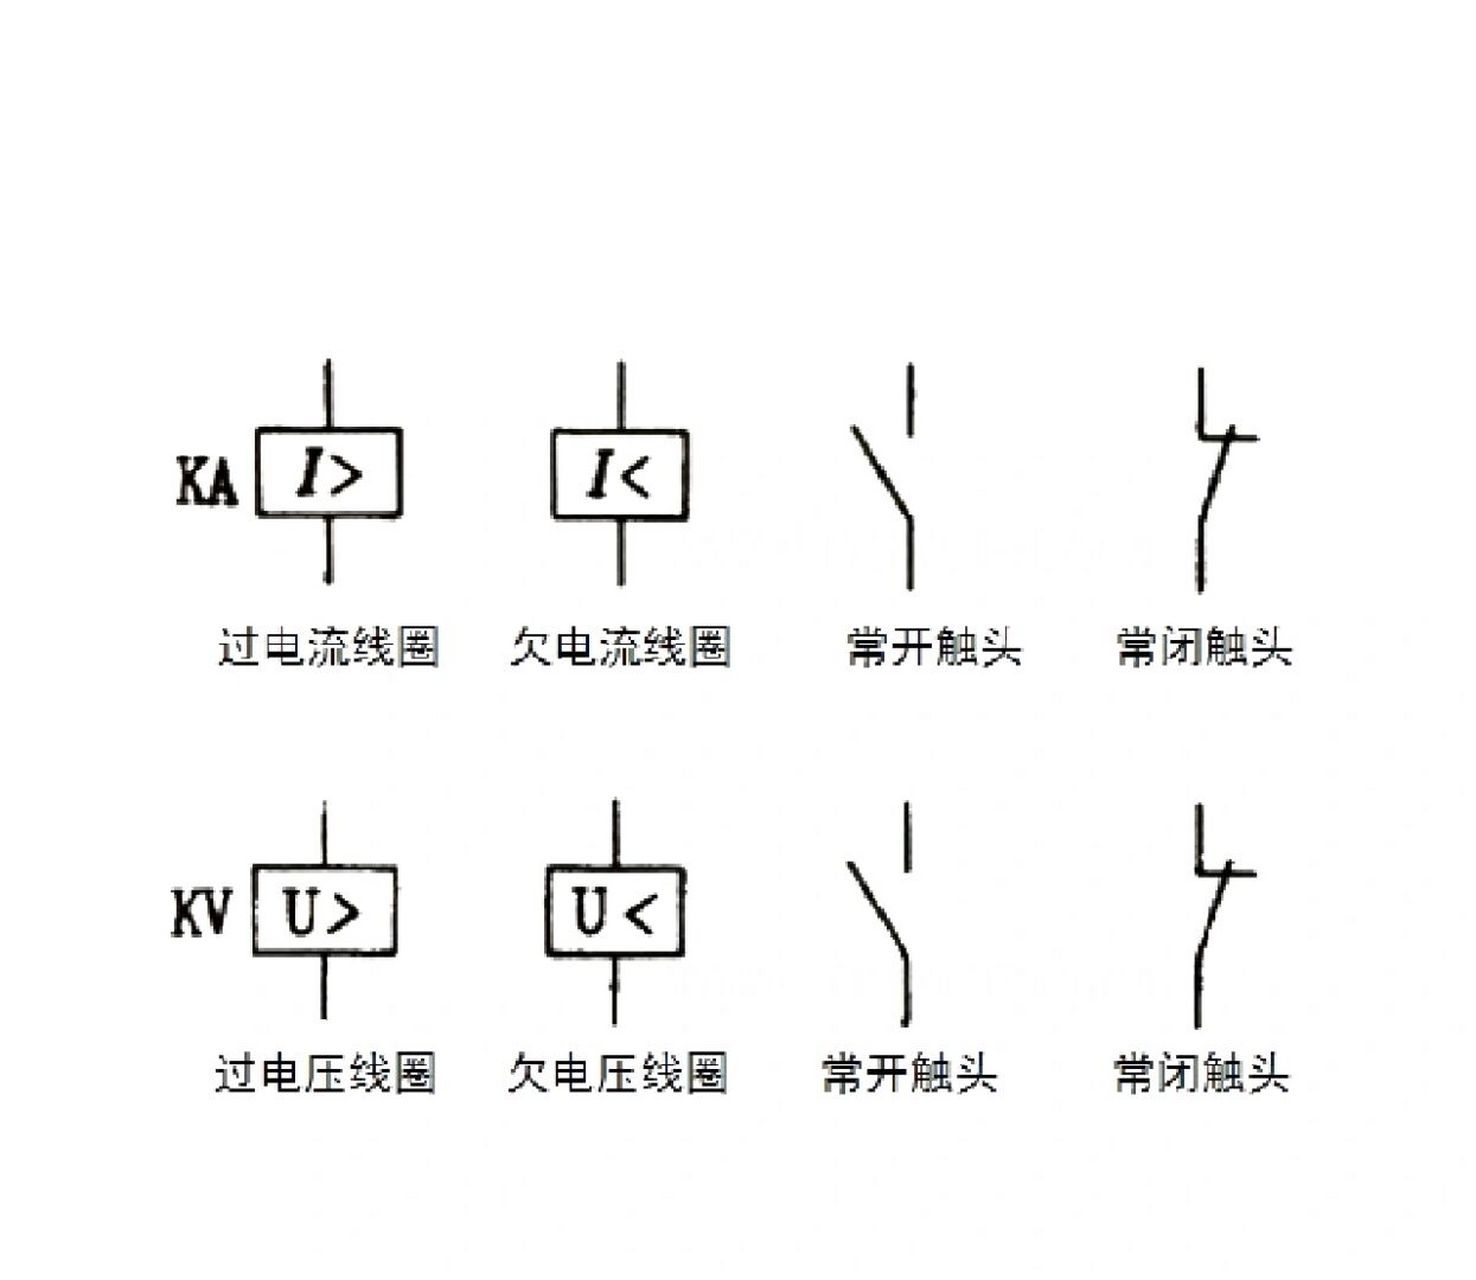 电磁式电流继电器,电压继电器原理及电路符号 同作为电路控制器件